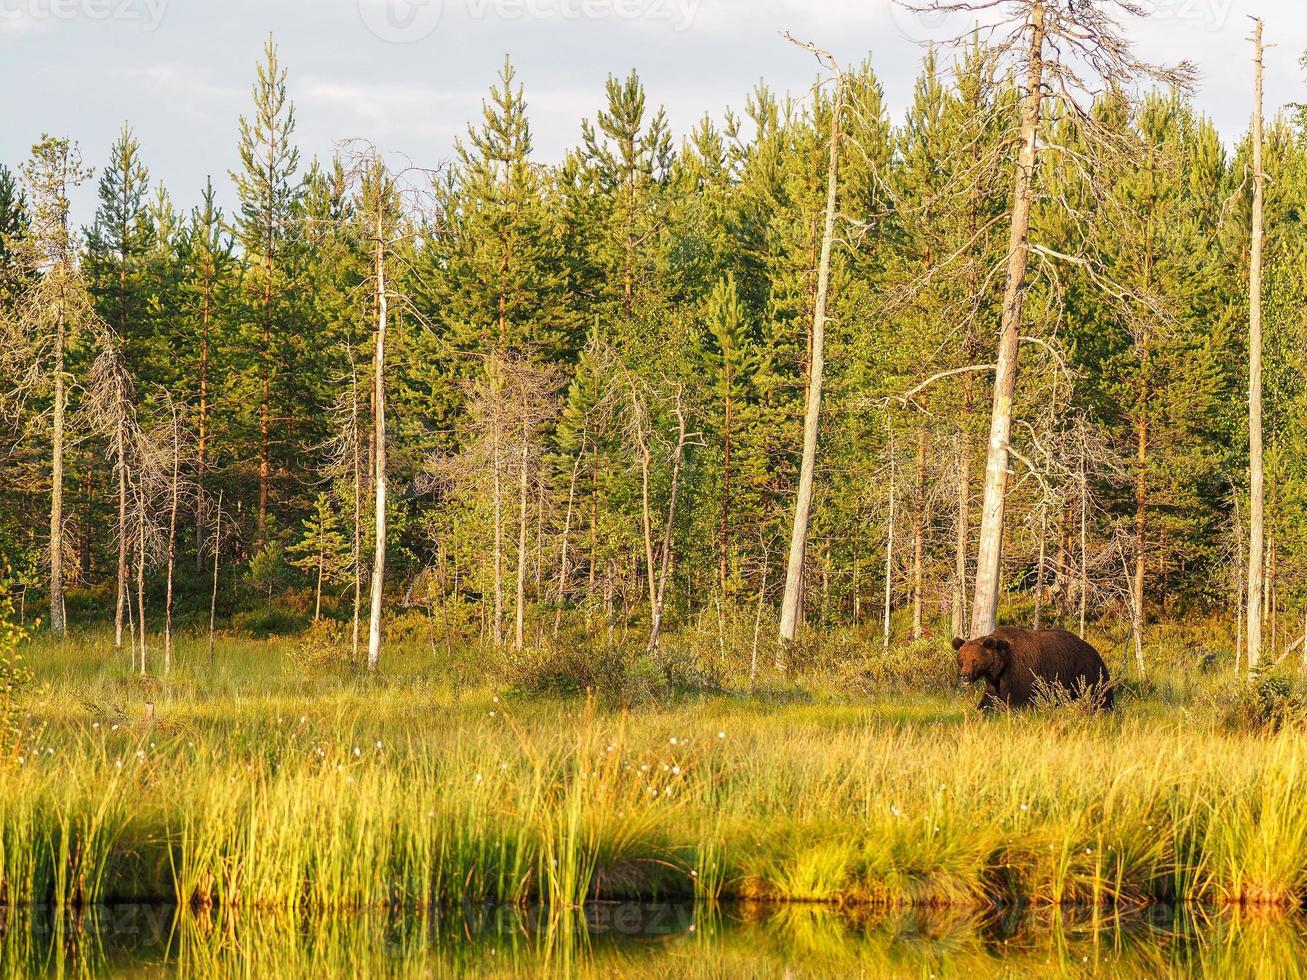 bruine beer (ursus arctos) in het wild foto